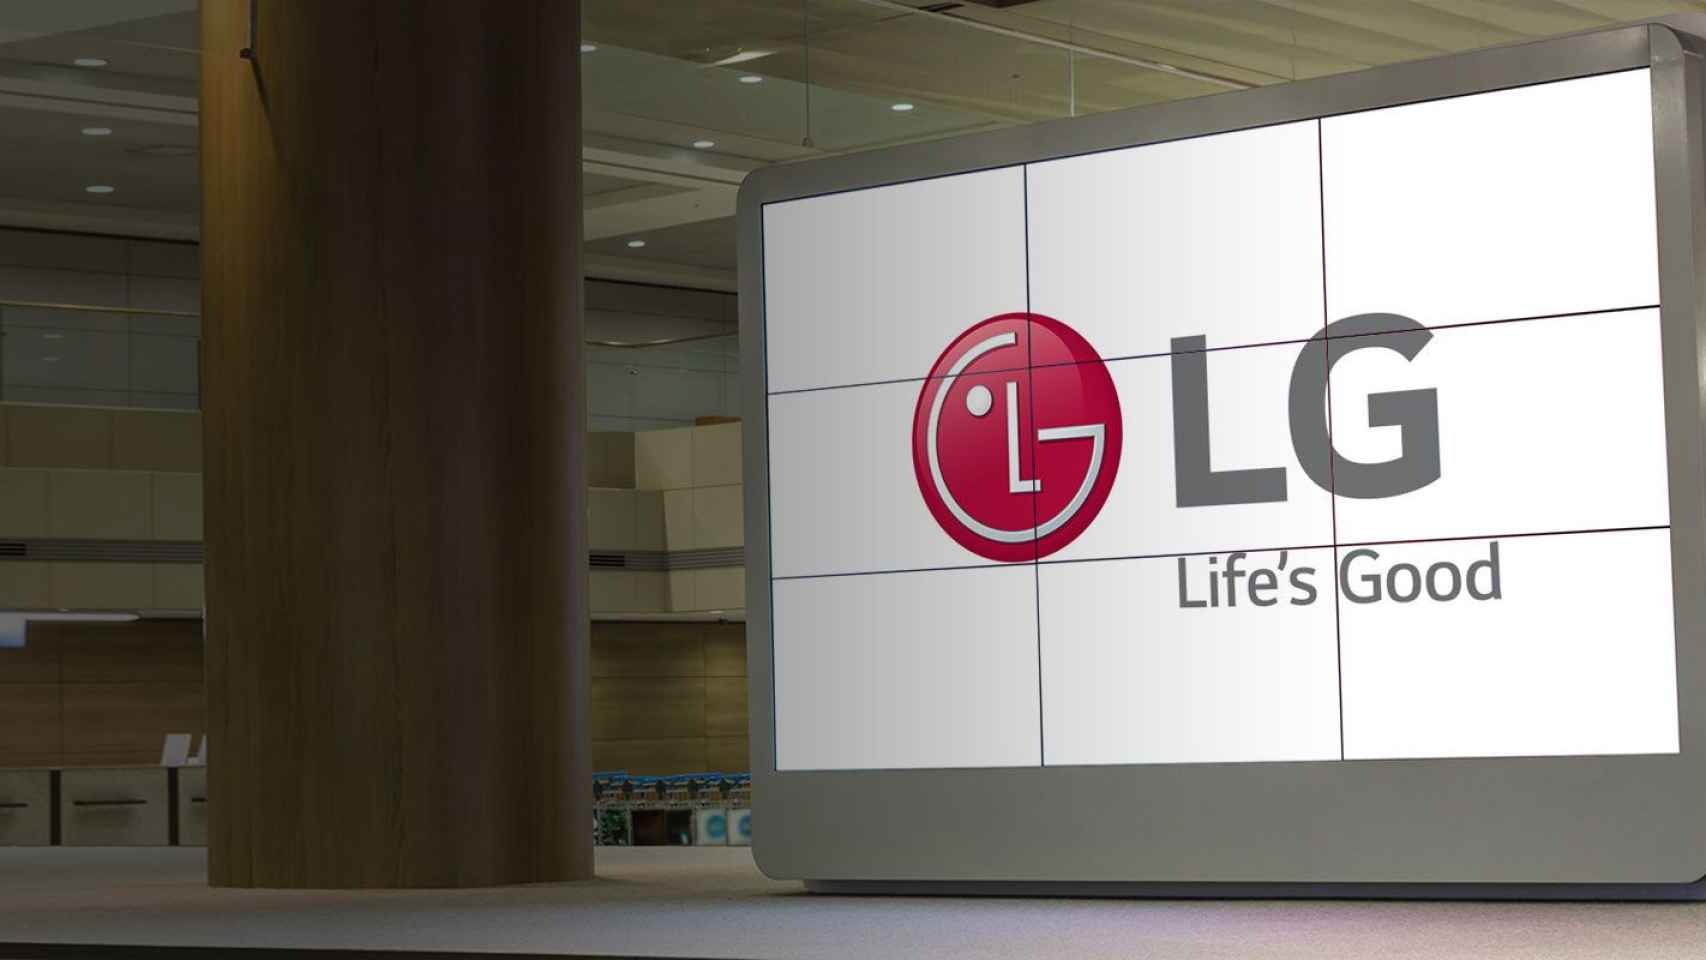 Pantalla de LG en la compañía de la empresa sudcoreana / LG